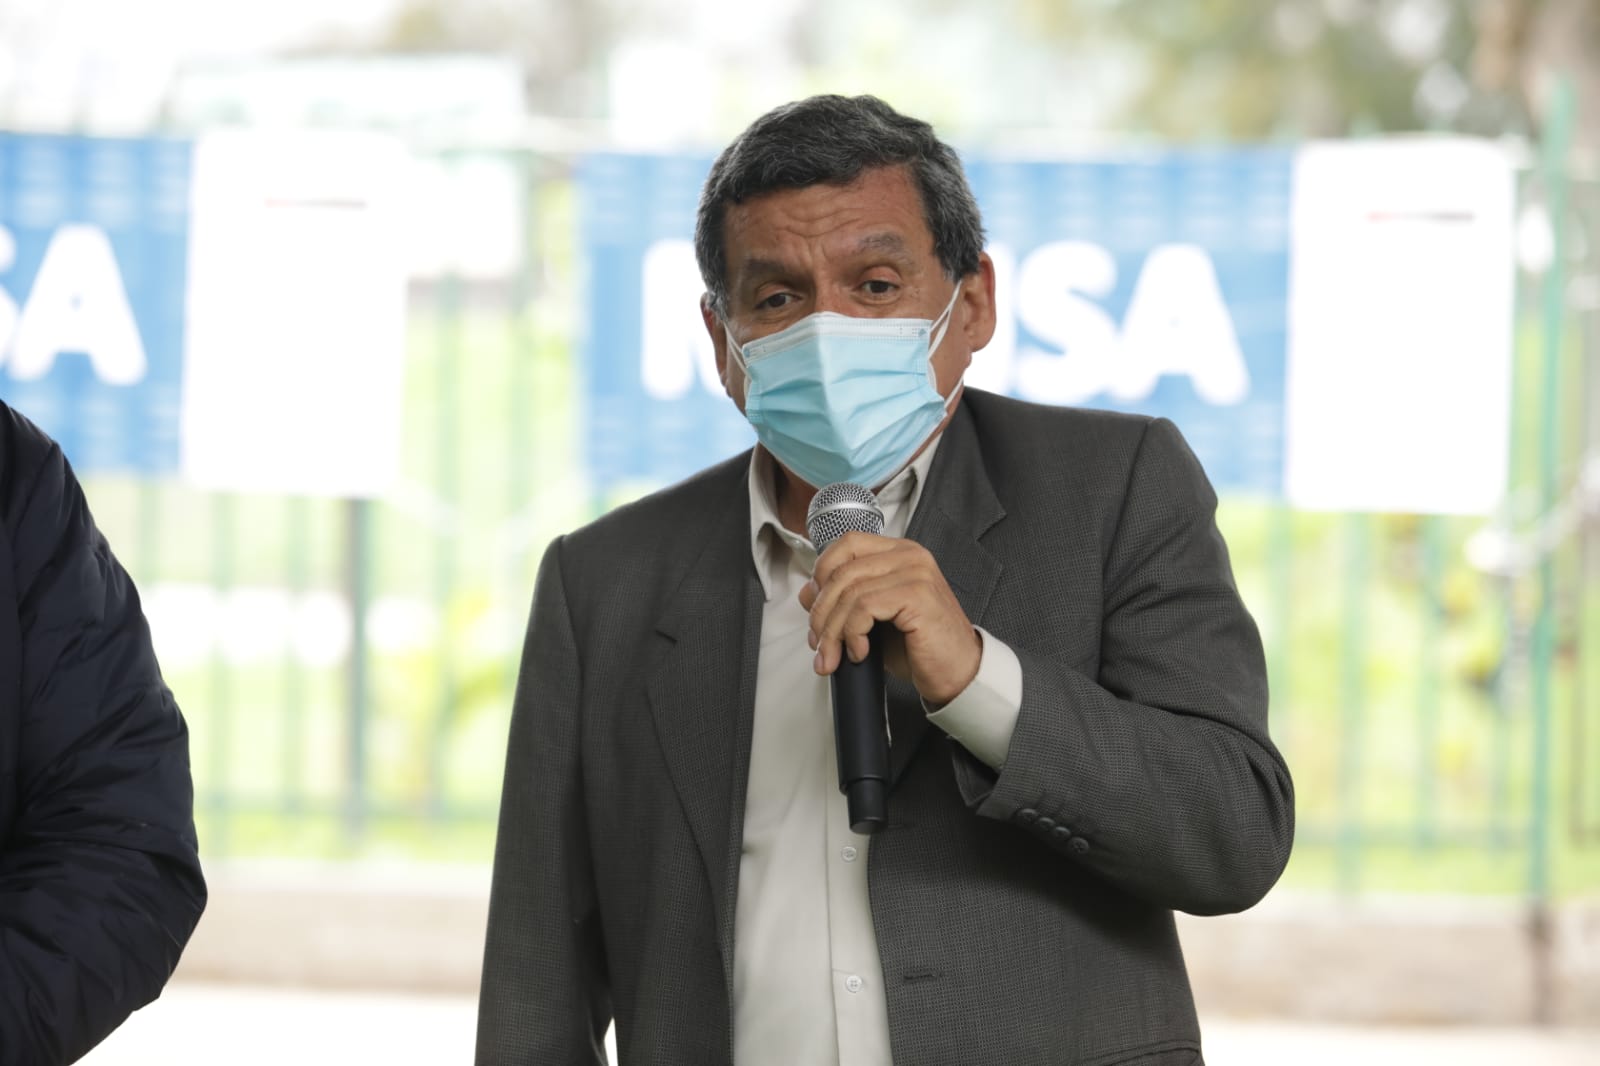 Hernando Cevallos tras aprobación de tercera dosis de Pfizer en EE.UU.: “Se está evaluando en nuestro país”